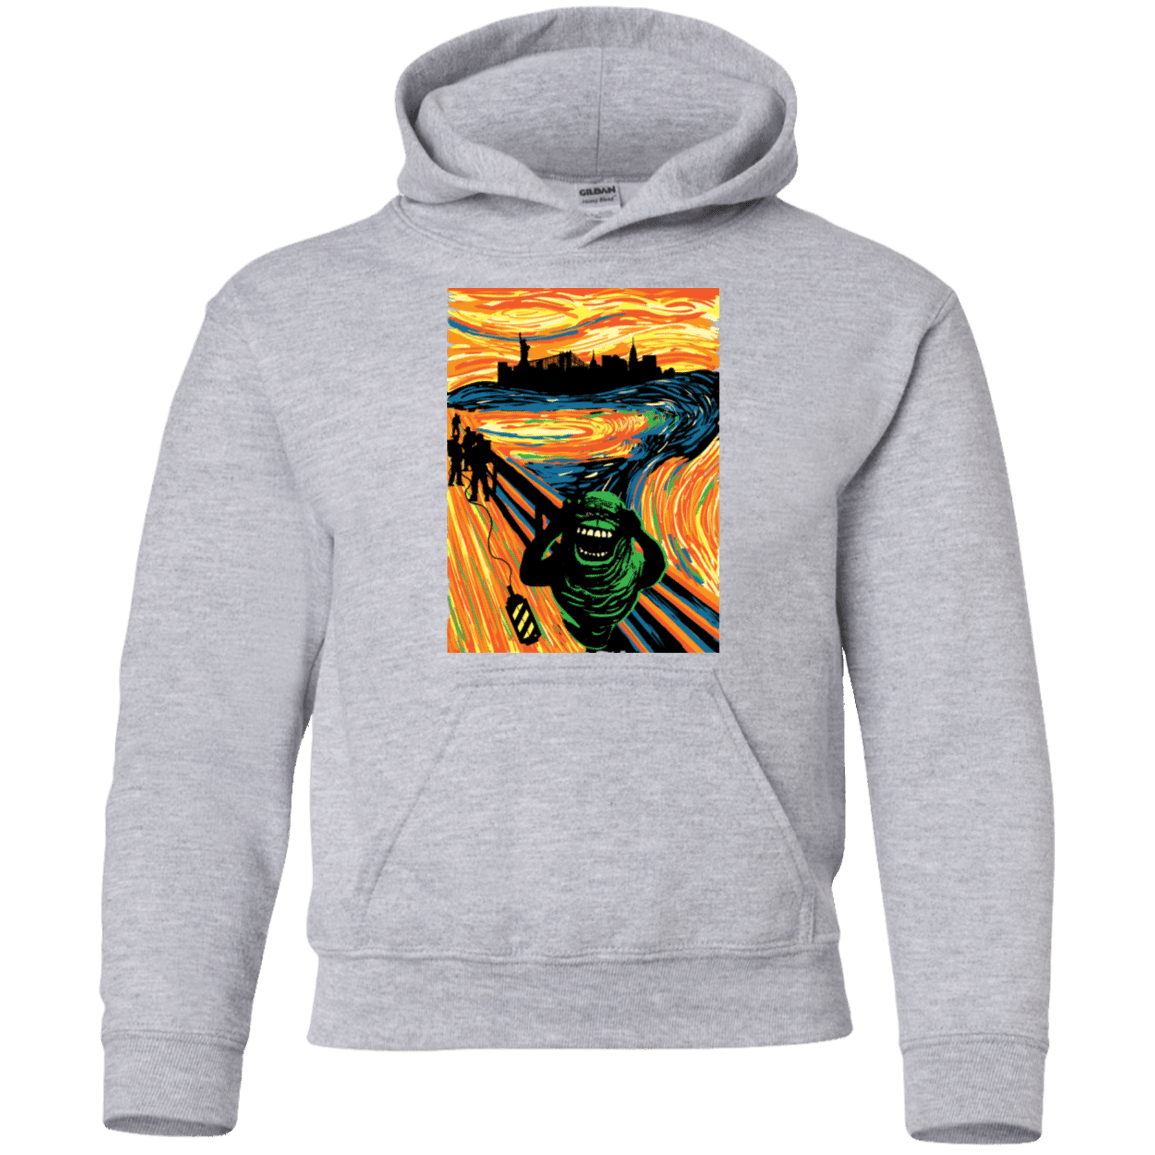 Sweatshirts Sport Grey / YS Slimer's Scream Youth Hoodie